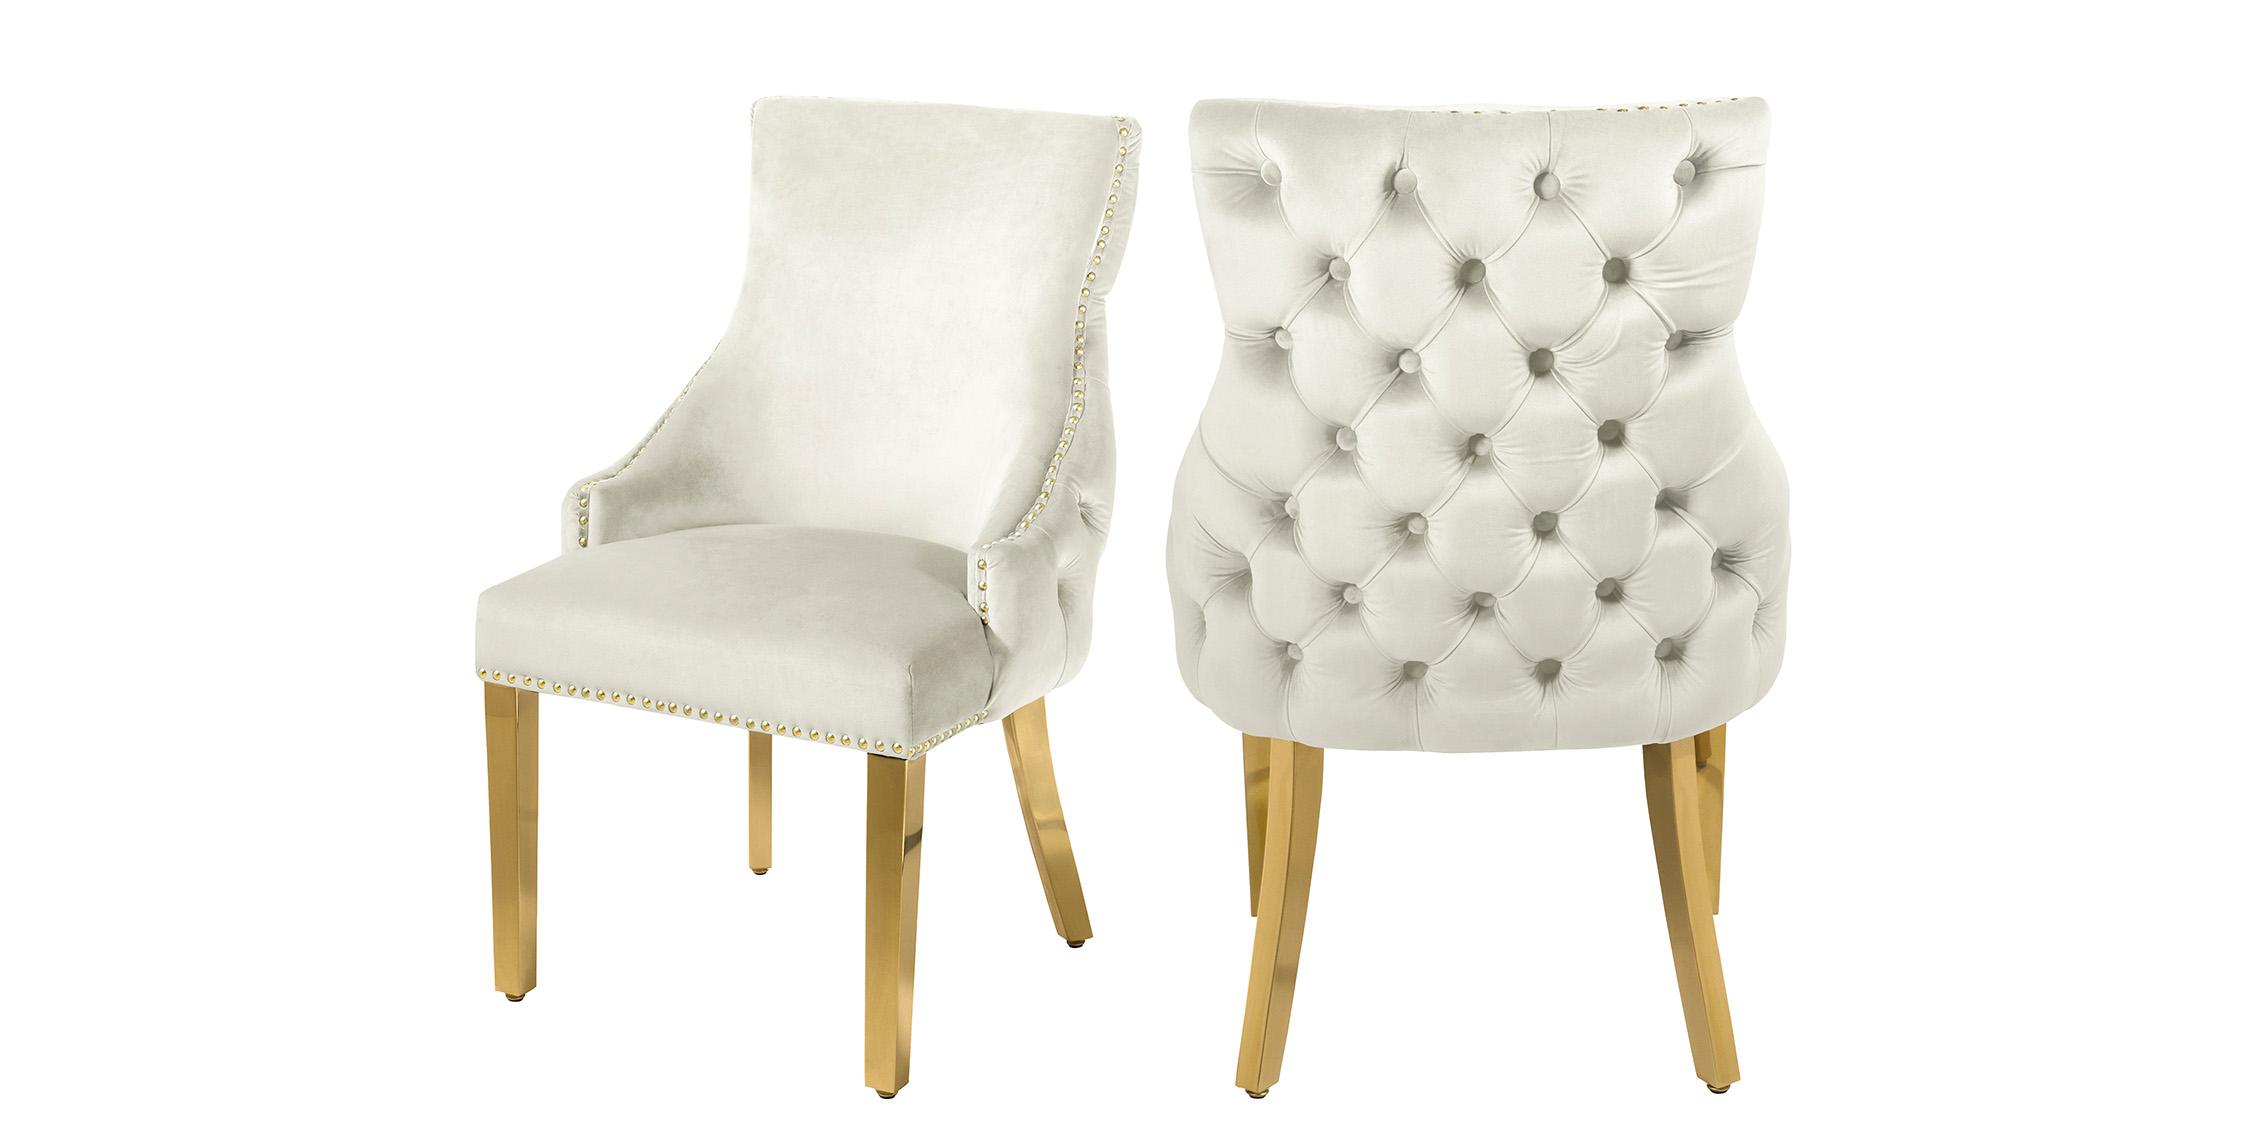 Contemporary, Modern Dining Chair Set TUFT 730Cream-C 730Cream-C in Cream, Gold Velvet